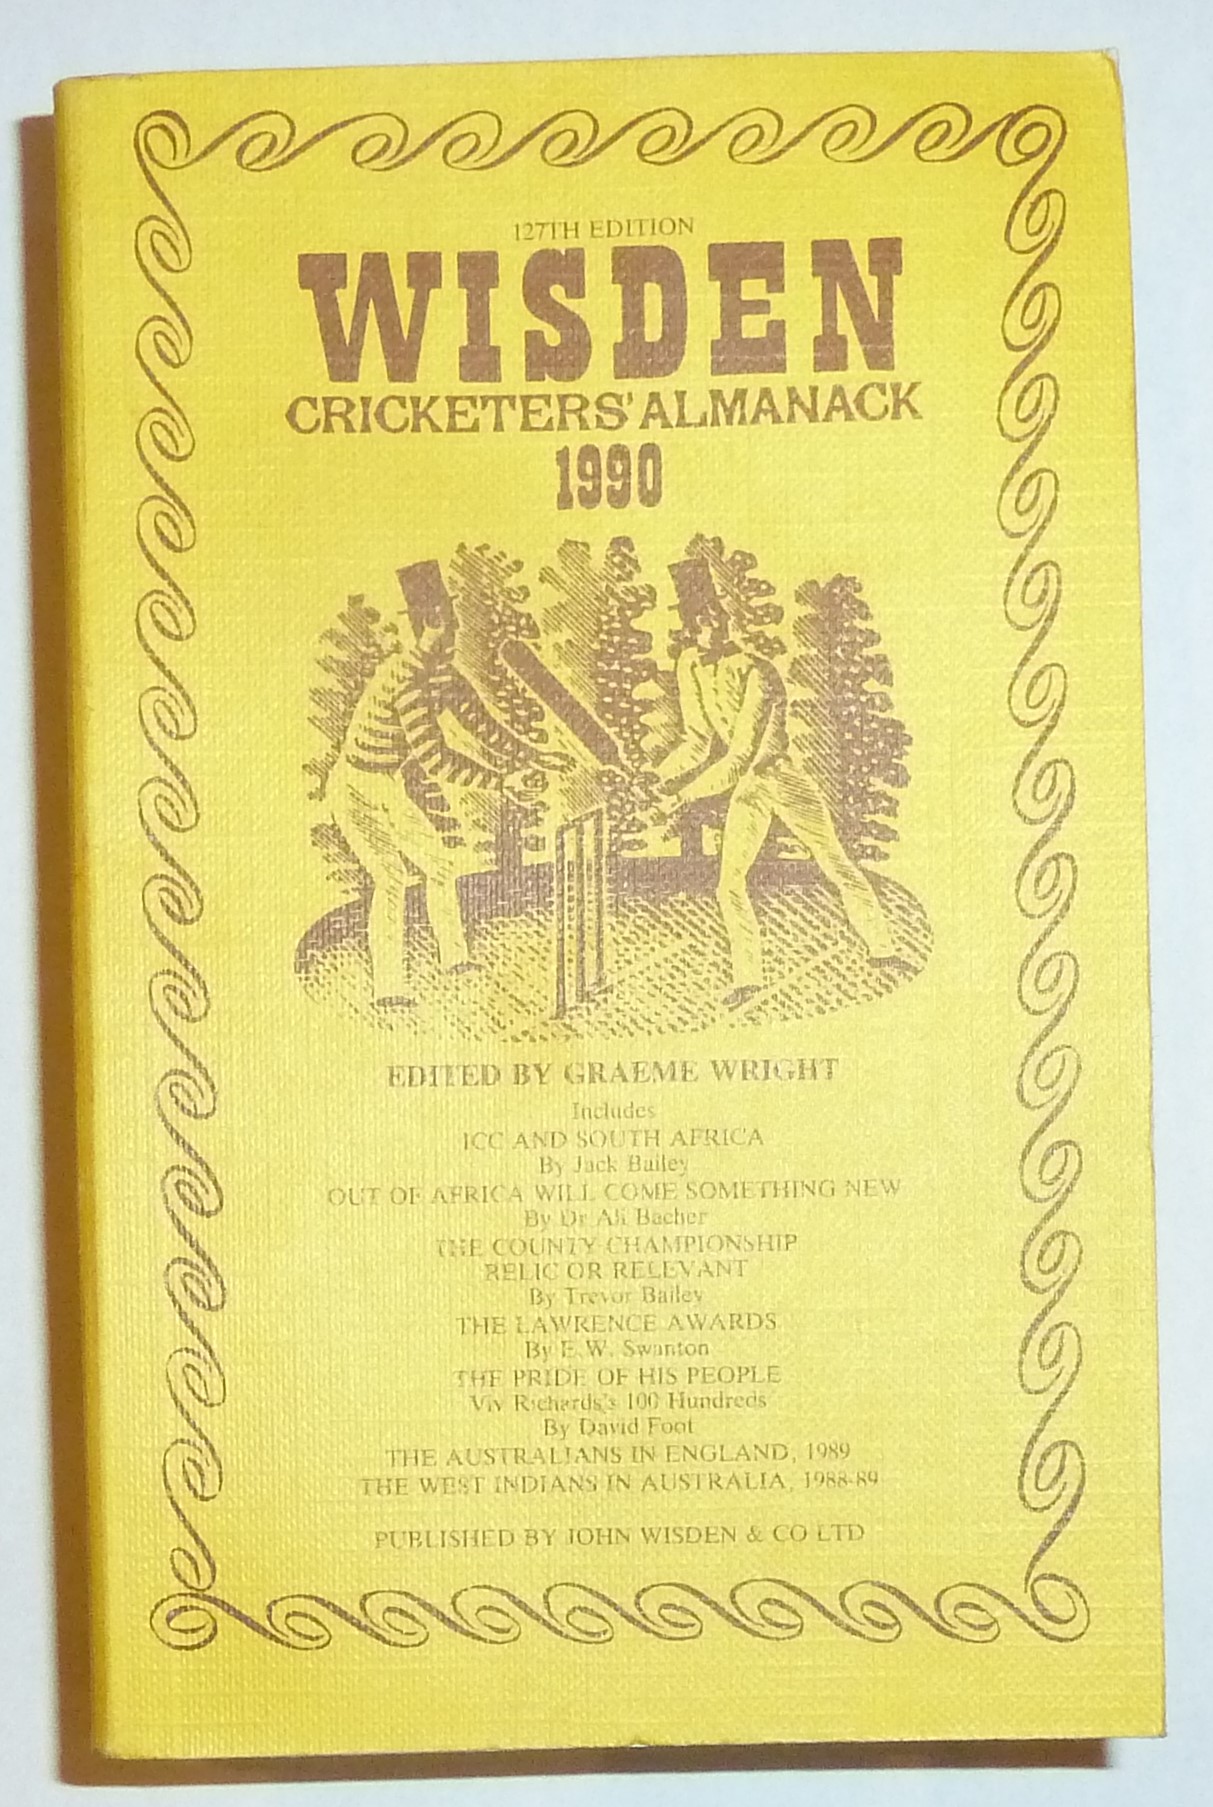 Wisden Cricketers' Almanack 1990